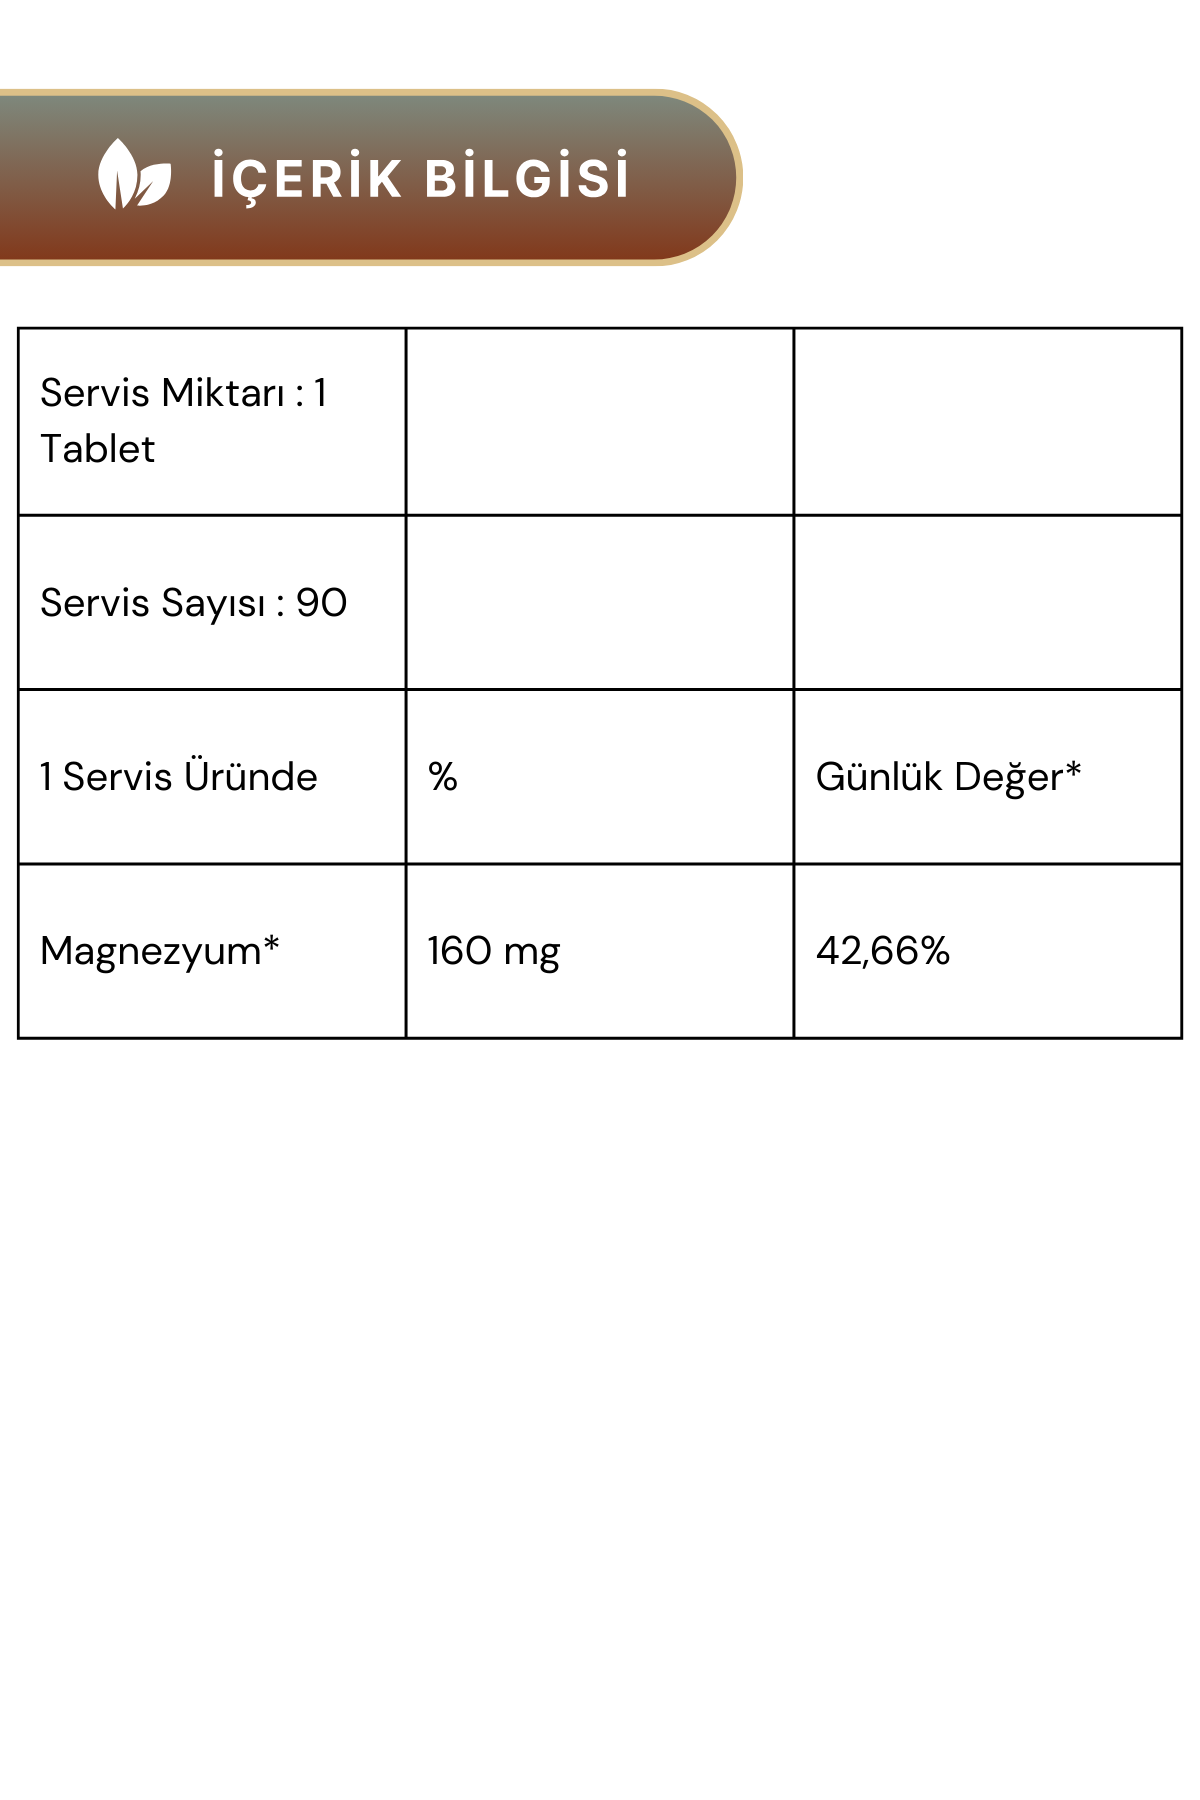 VeNatura Magnezyum Bisglisinat 160 mg 30 Kapsül 3'lü Paket